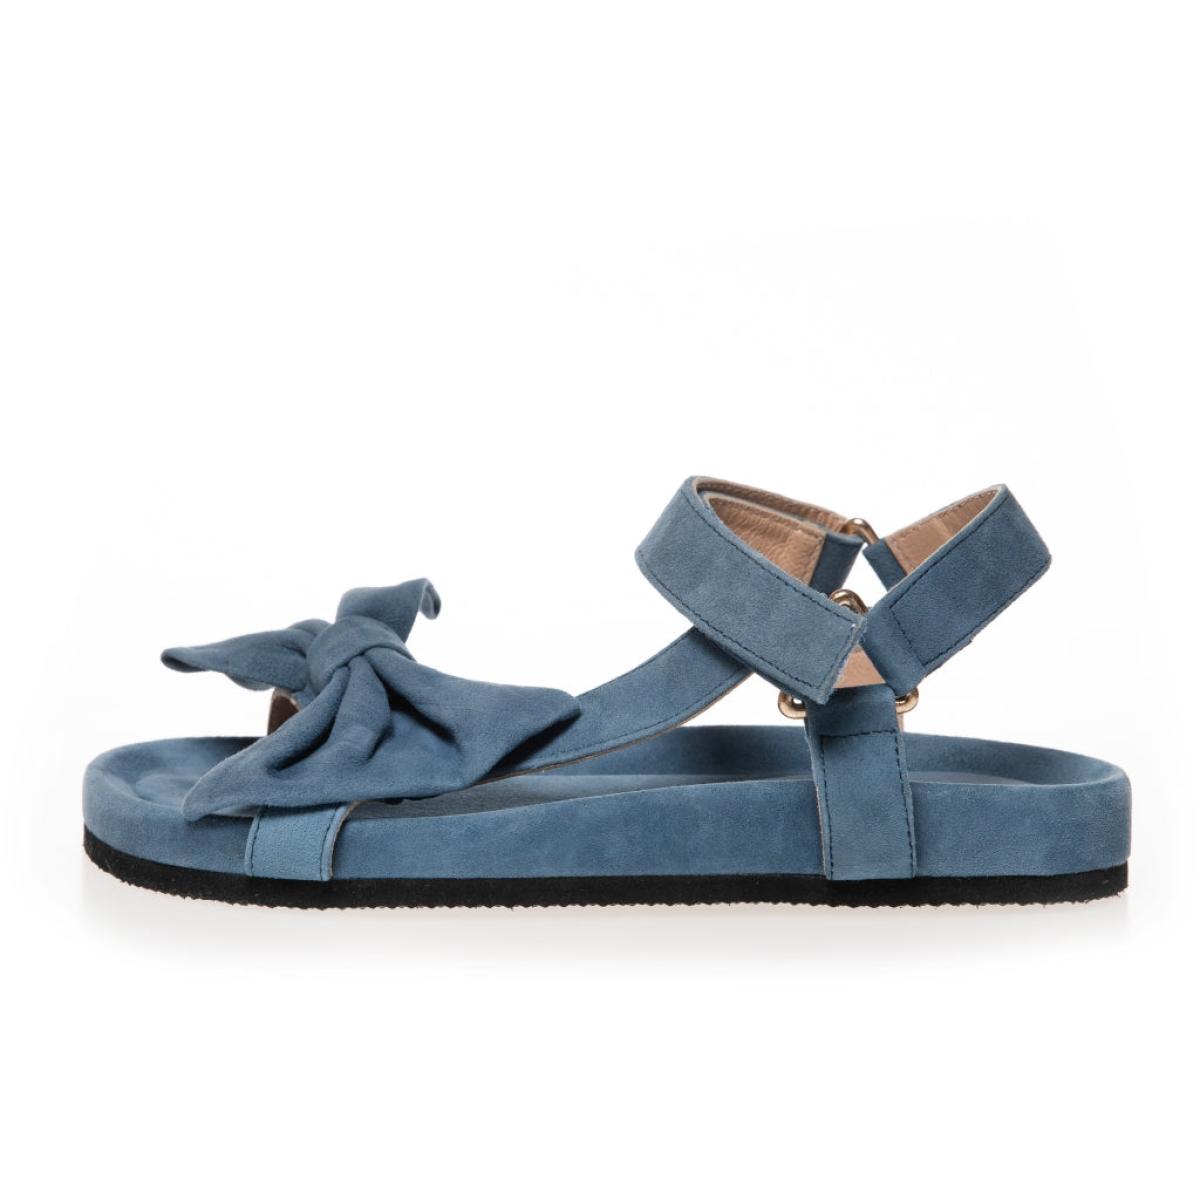 Copenhagen Shoes Trending Sky And Diamonds 23 Suede - Denim Blue Sandals Women